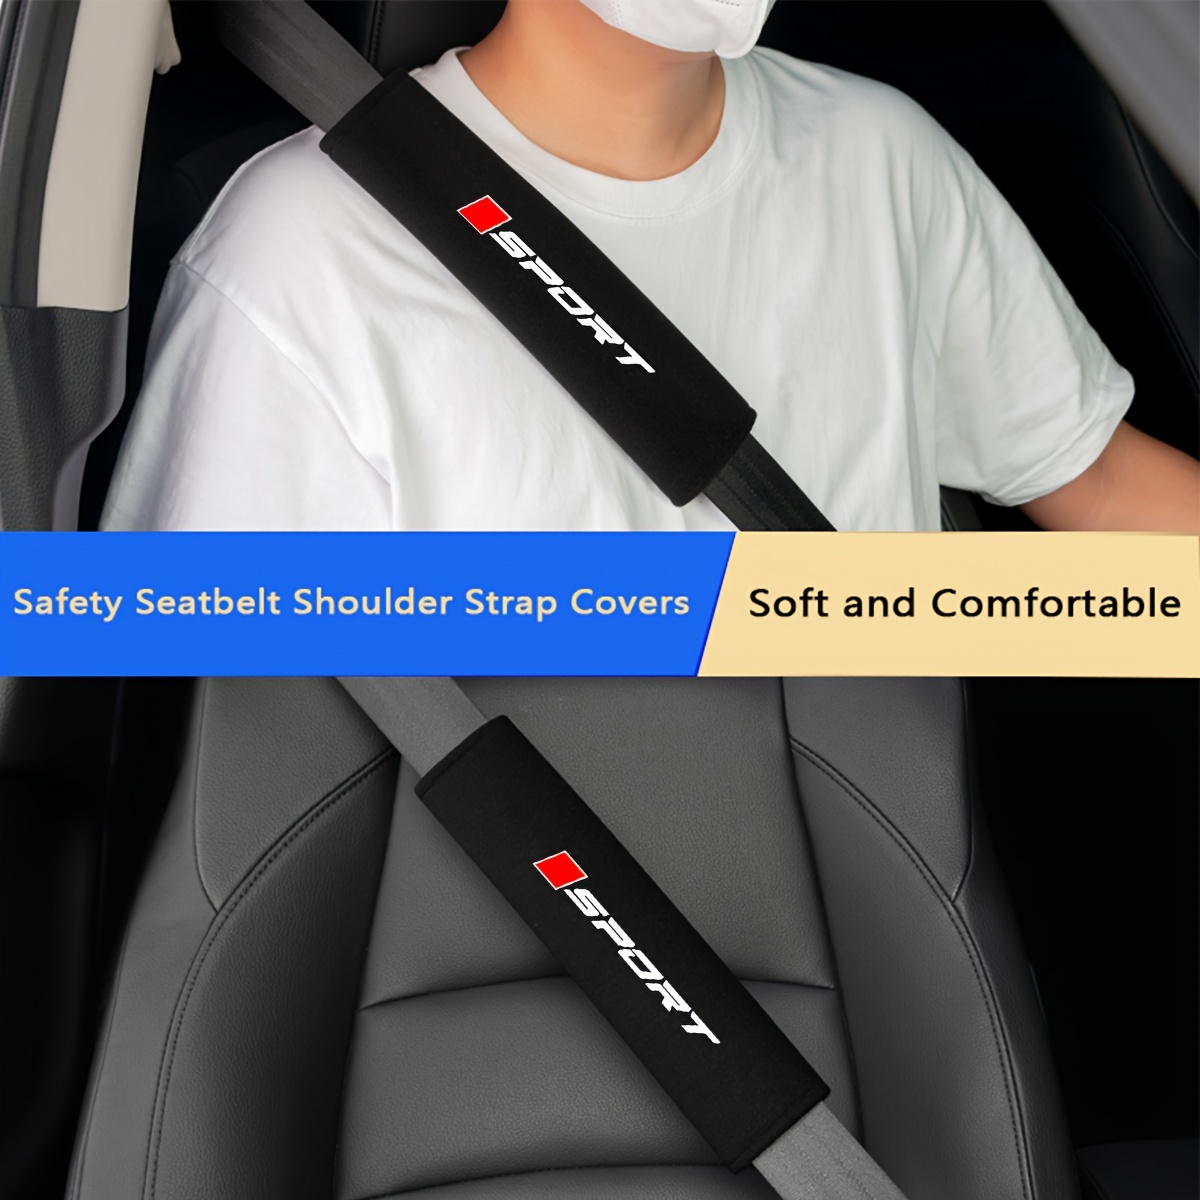 

Lot de 2 housses de ceinture de sécurité en peluche pour protéger les épaules lors de l'utilisation de la ceinture de sécurité dans les voitures Toyota, Honda, Mazda, Mitsubishi, Jeep et MG.